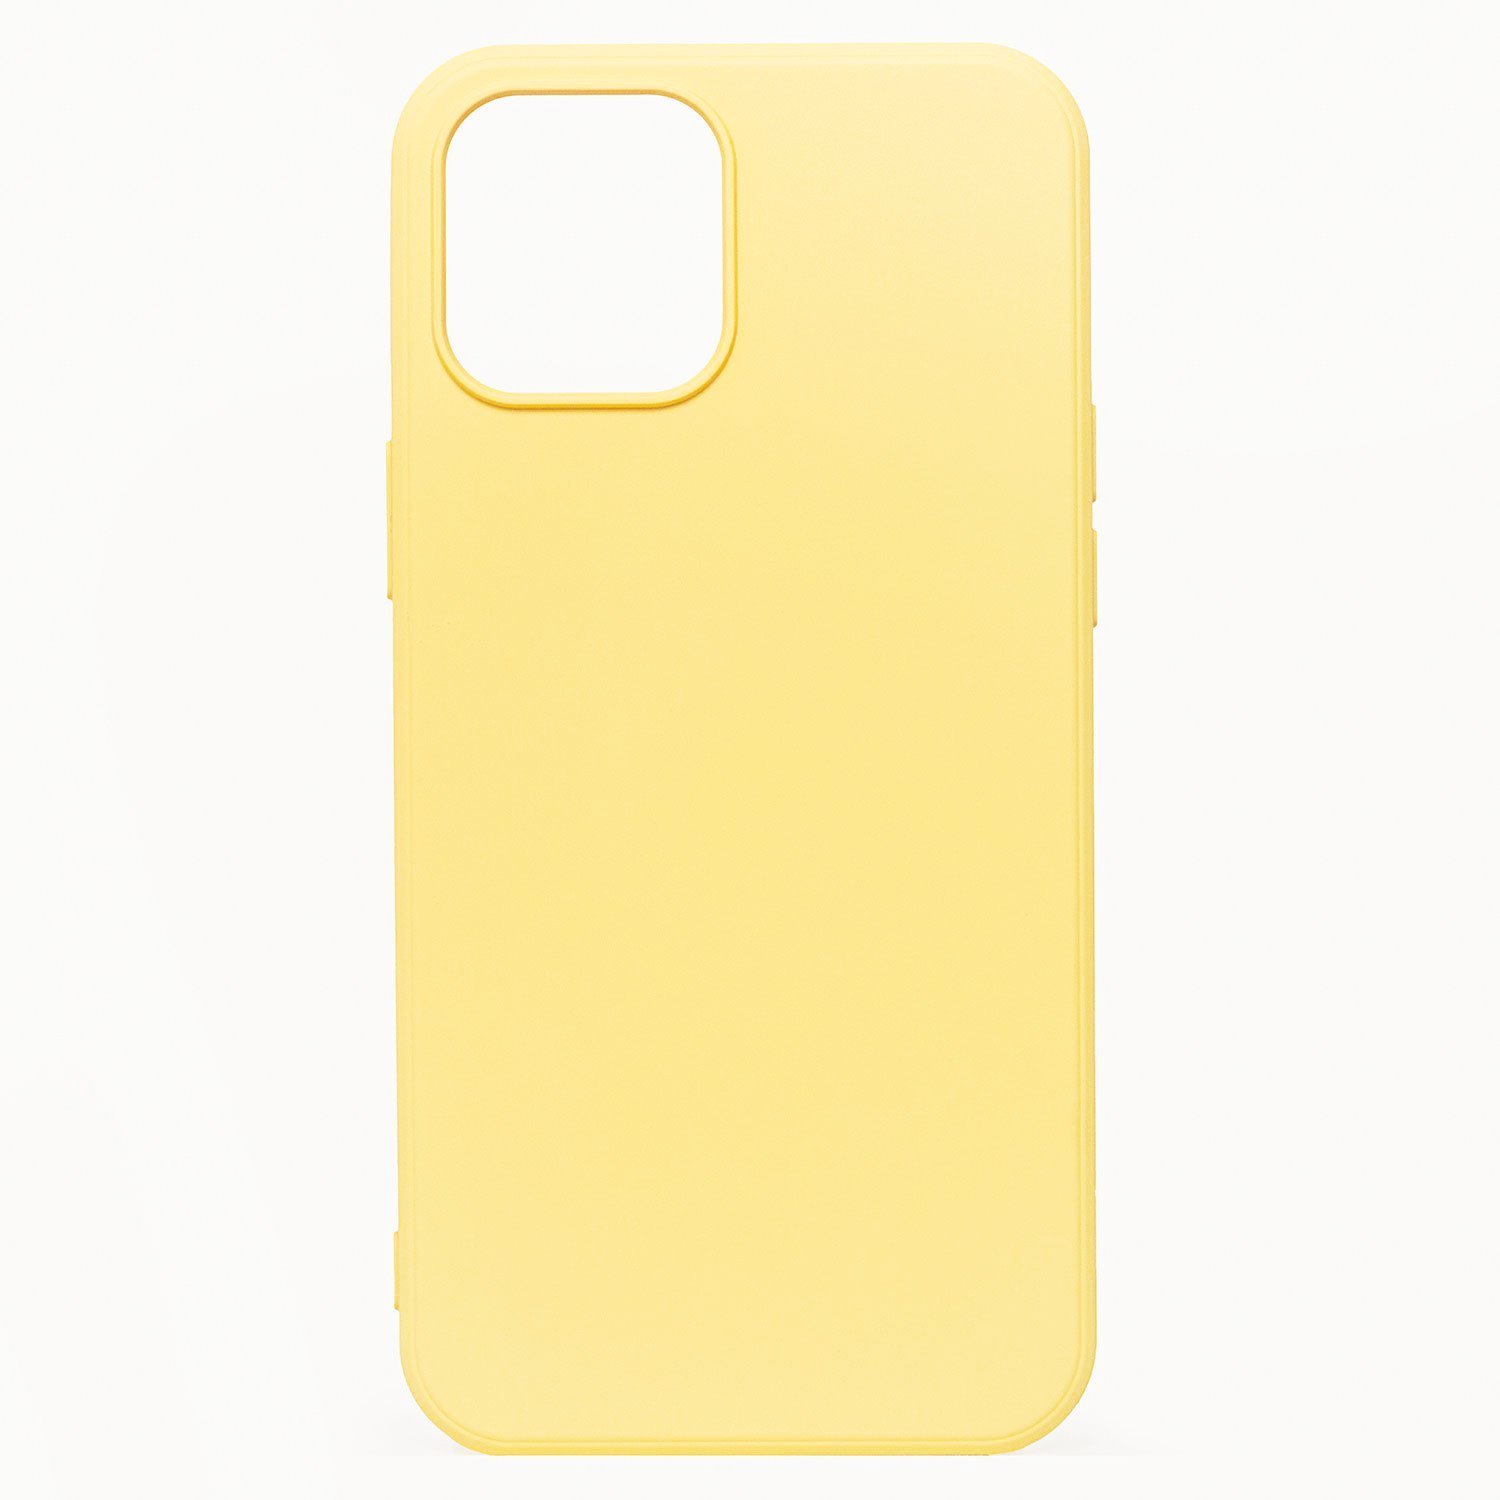 Чехол-накладка Activ Full Original Design для смартфона Apple iPhone 12 mini, желтый